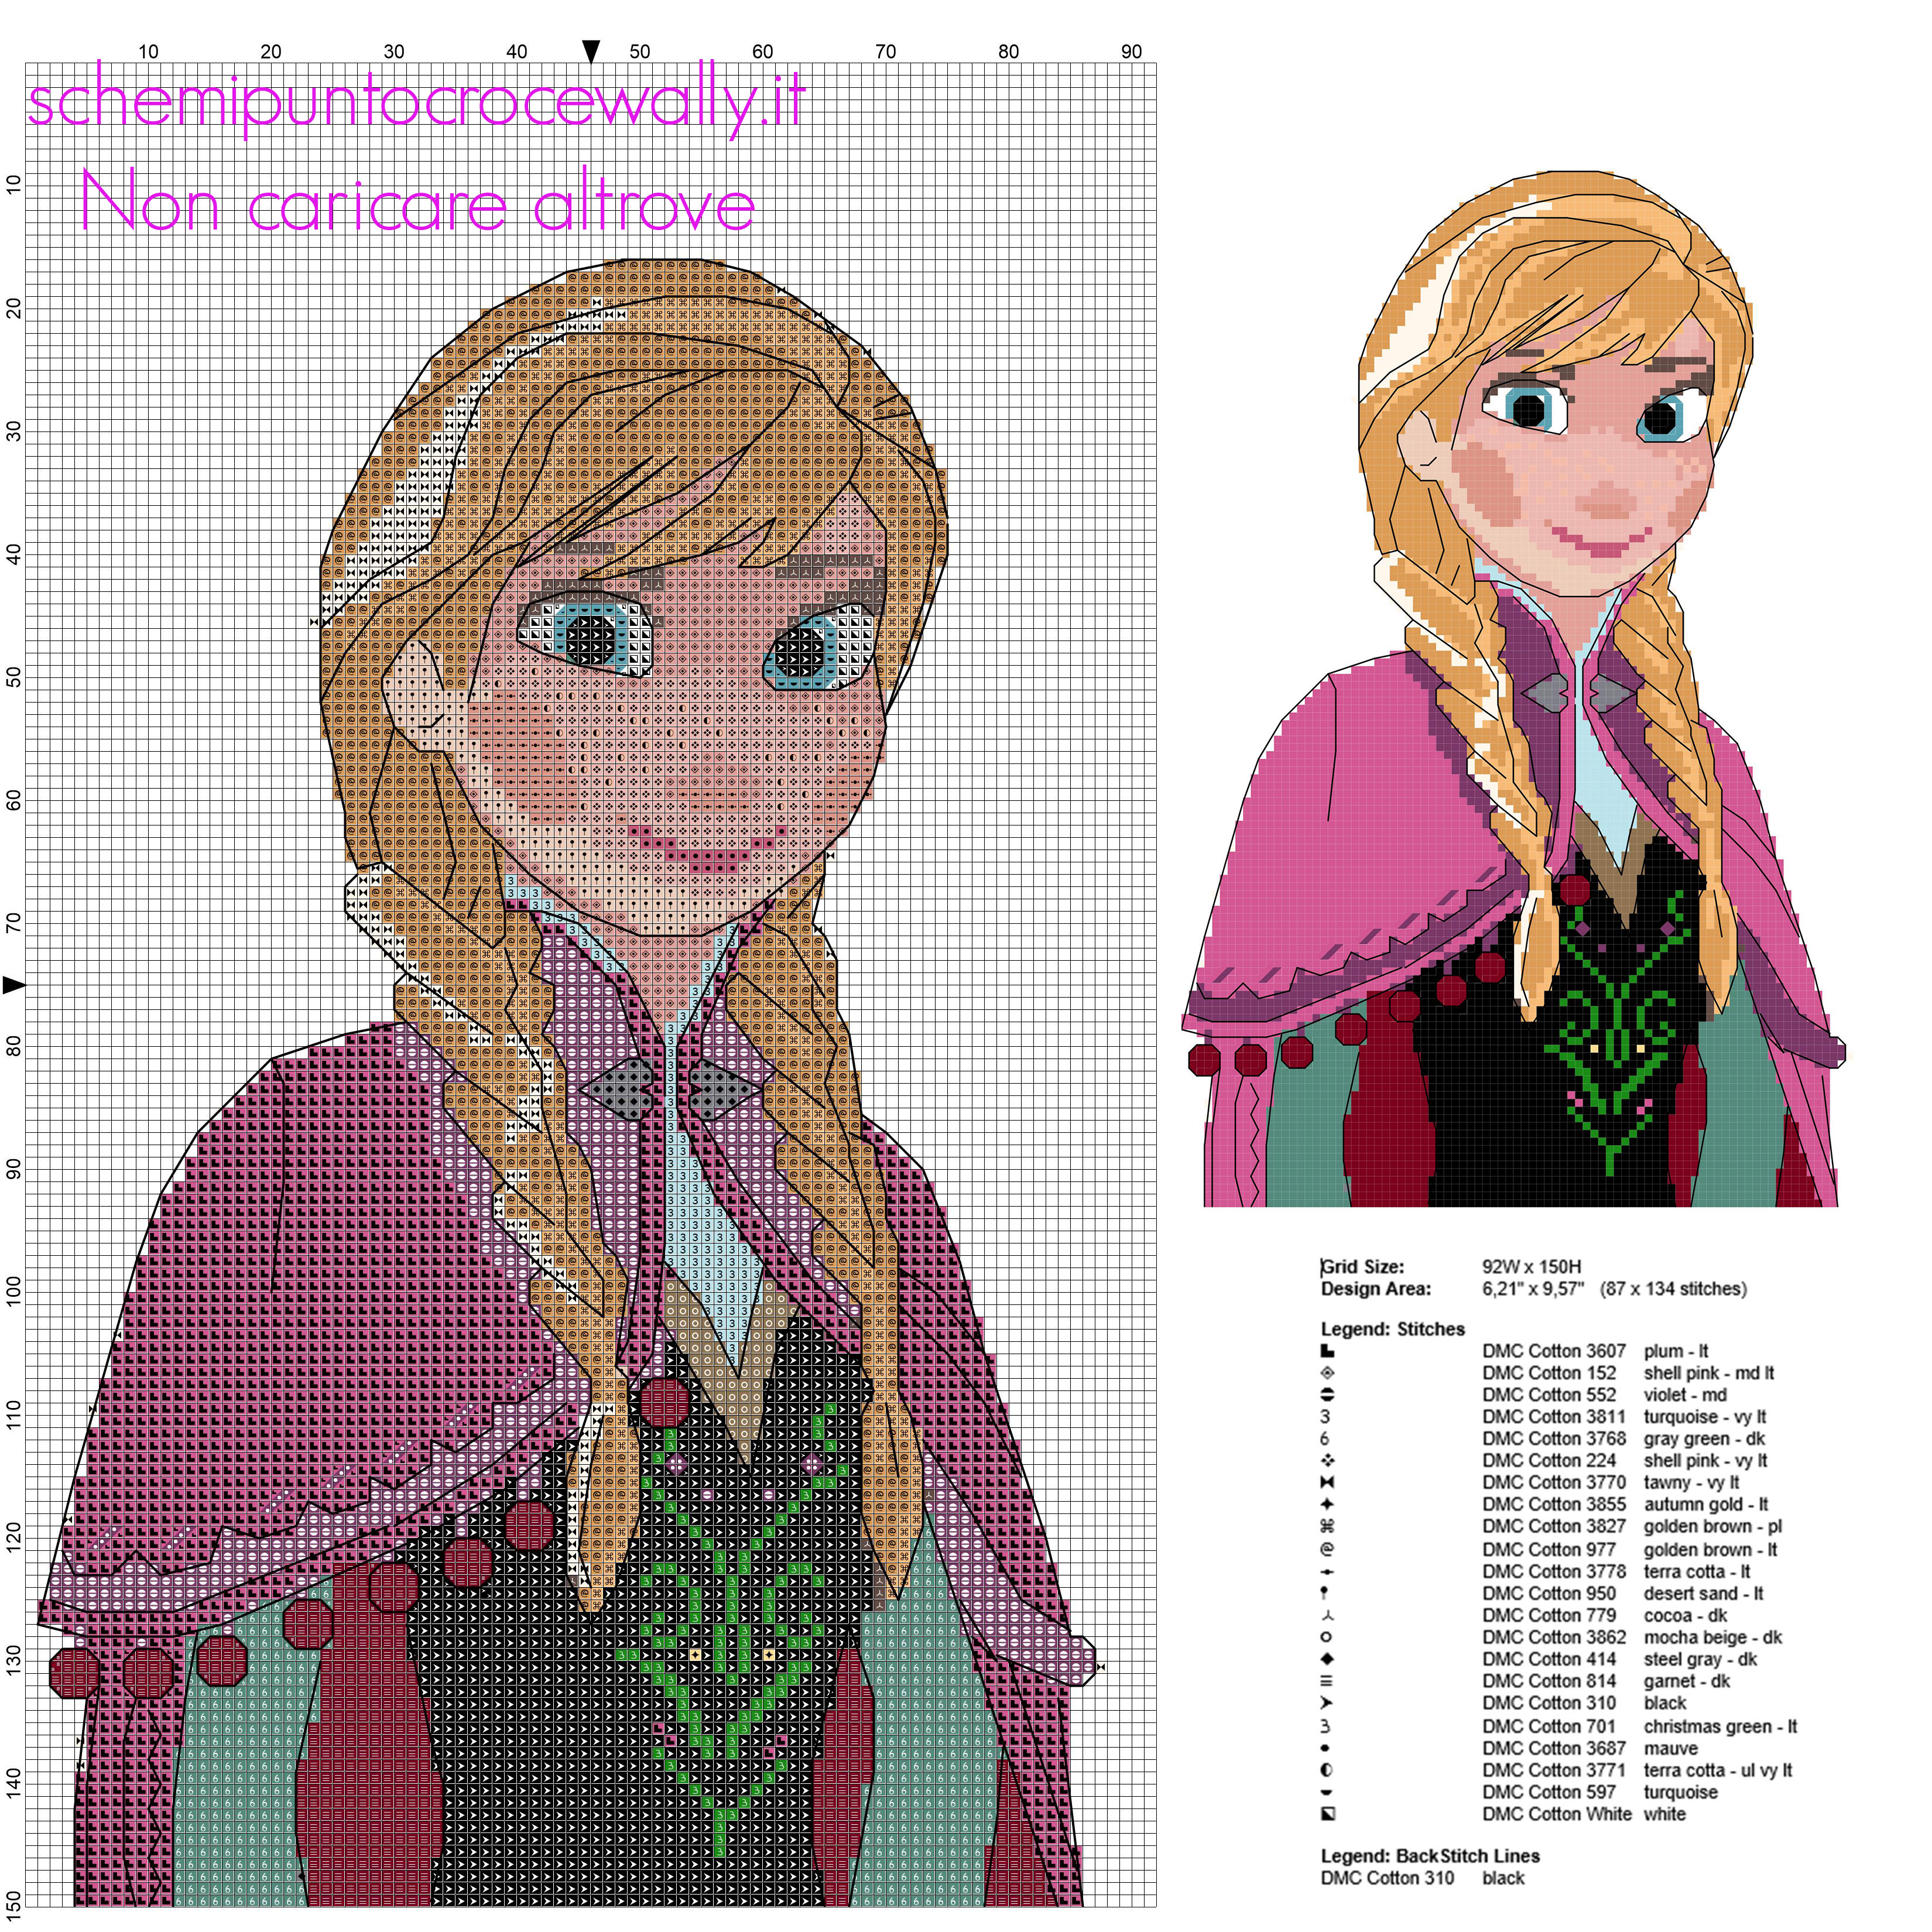 Anna personaggio del cartone animato Disney Frozen schema punto croce in circa 150 crocette